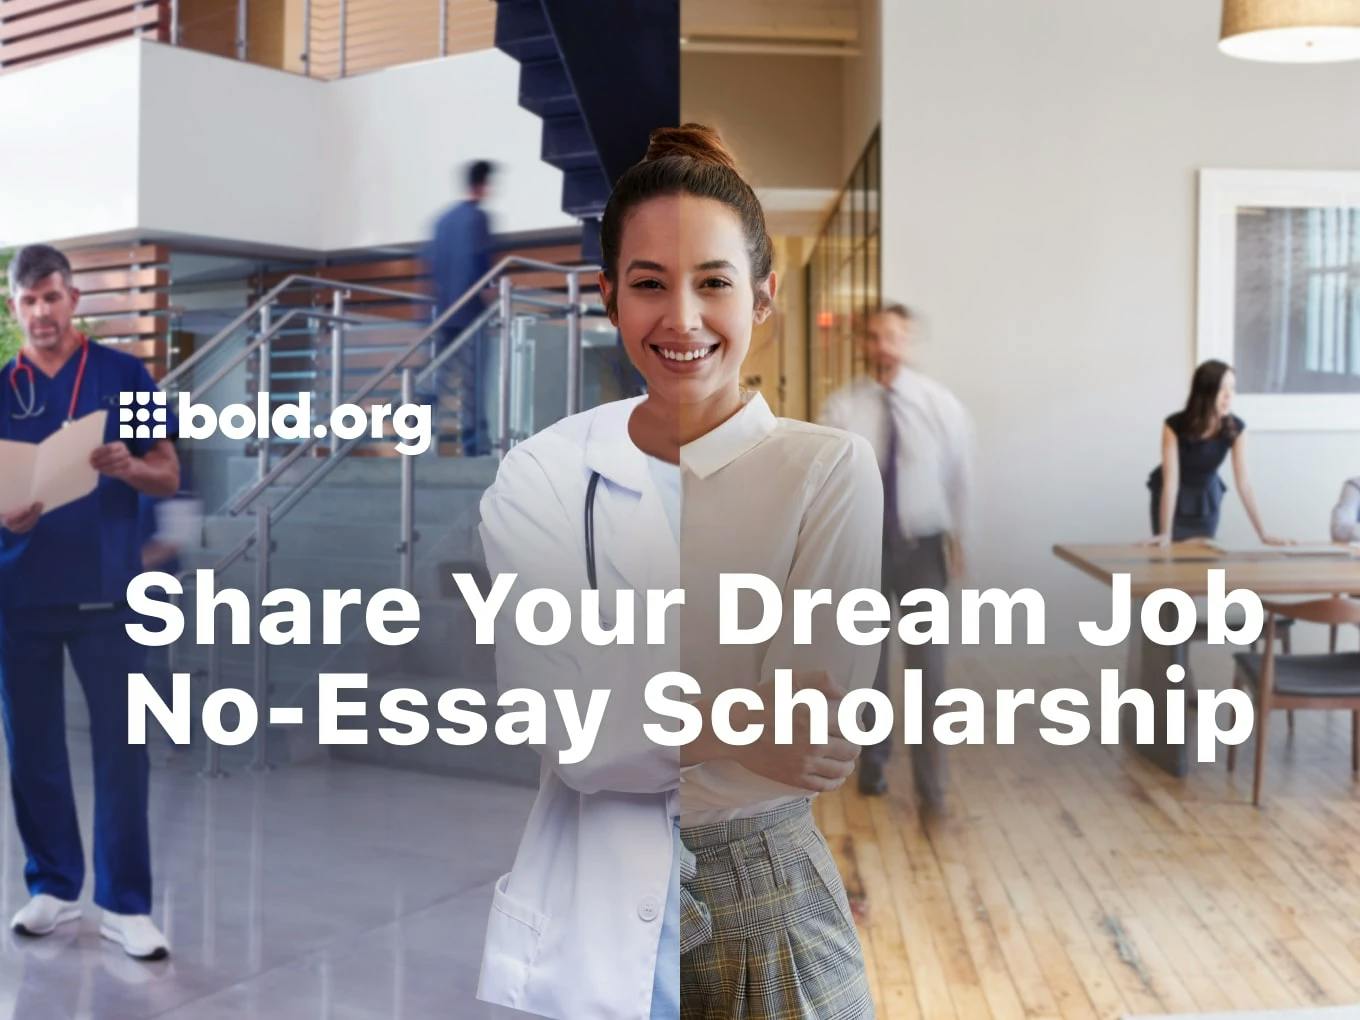 Share Your Dream Job No-Essay Scholarship